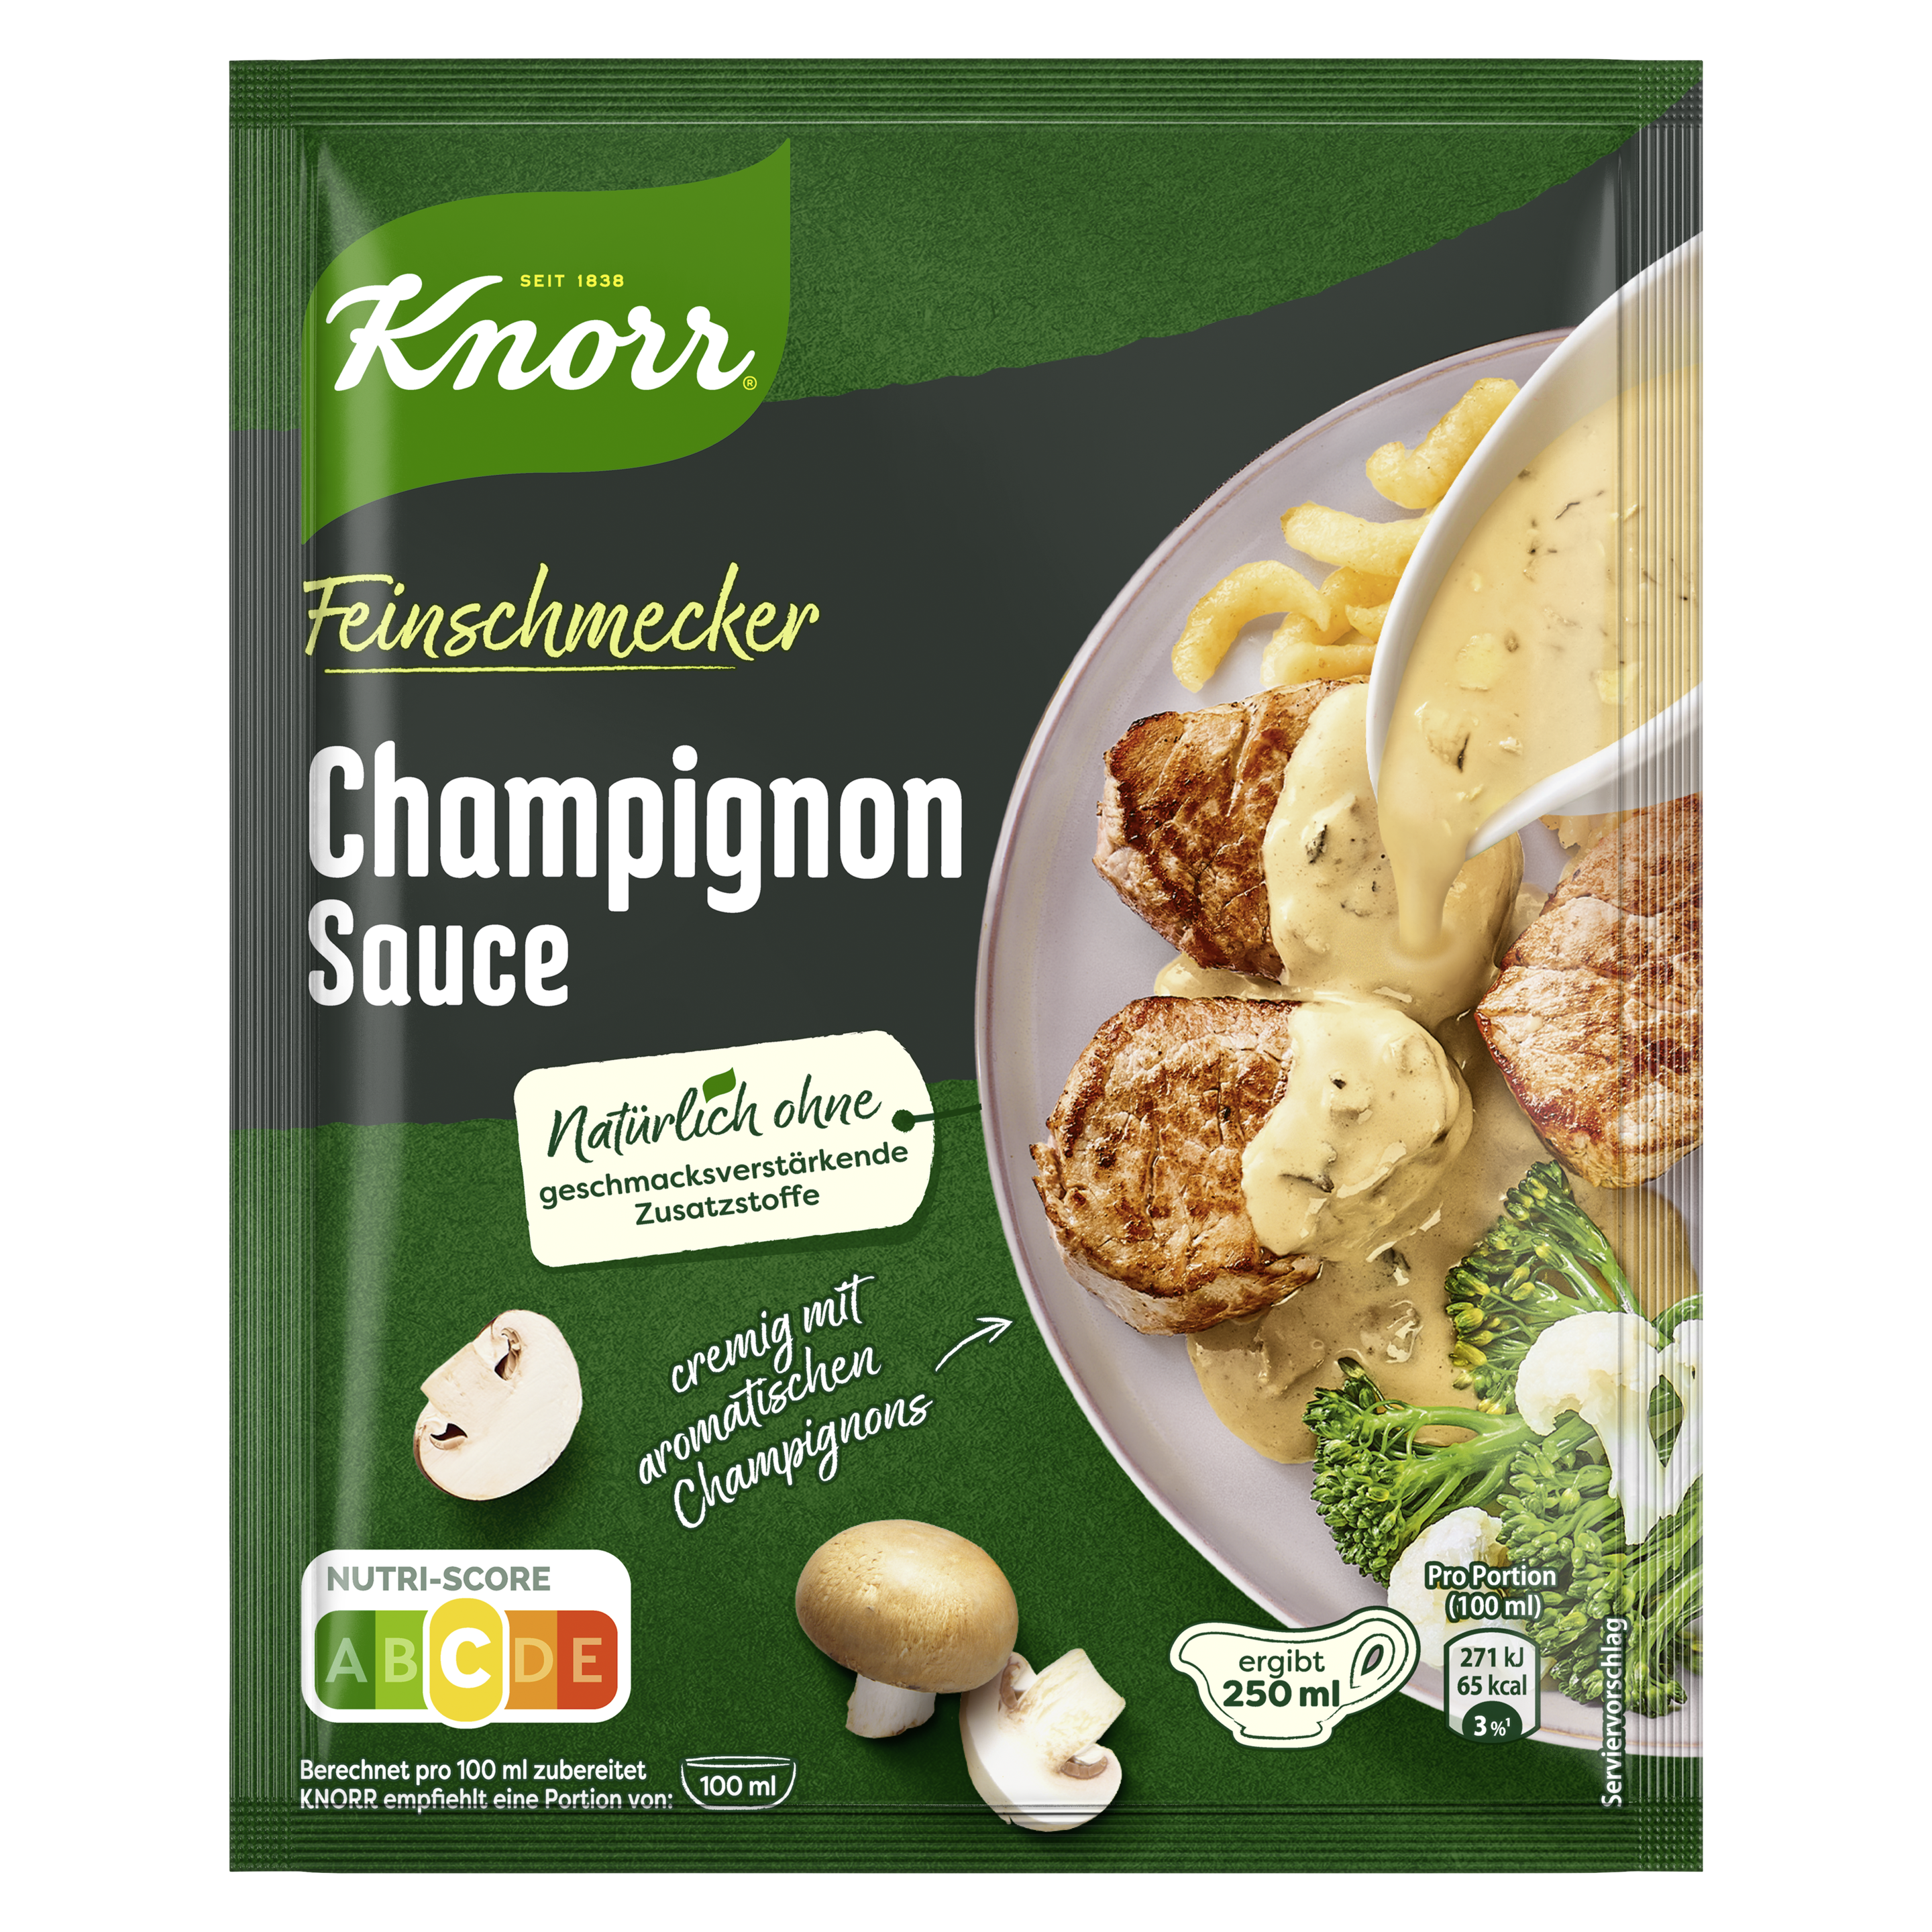 Knorr Feinschmecker Champignon Sauce ergibt 250 ml